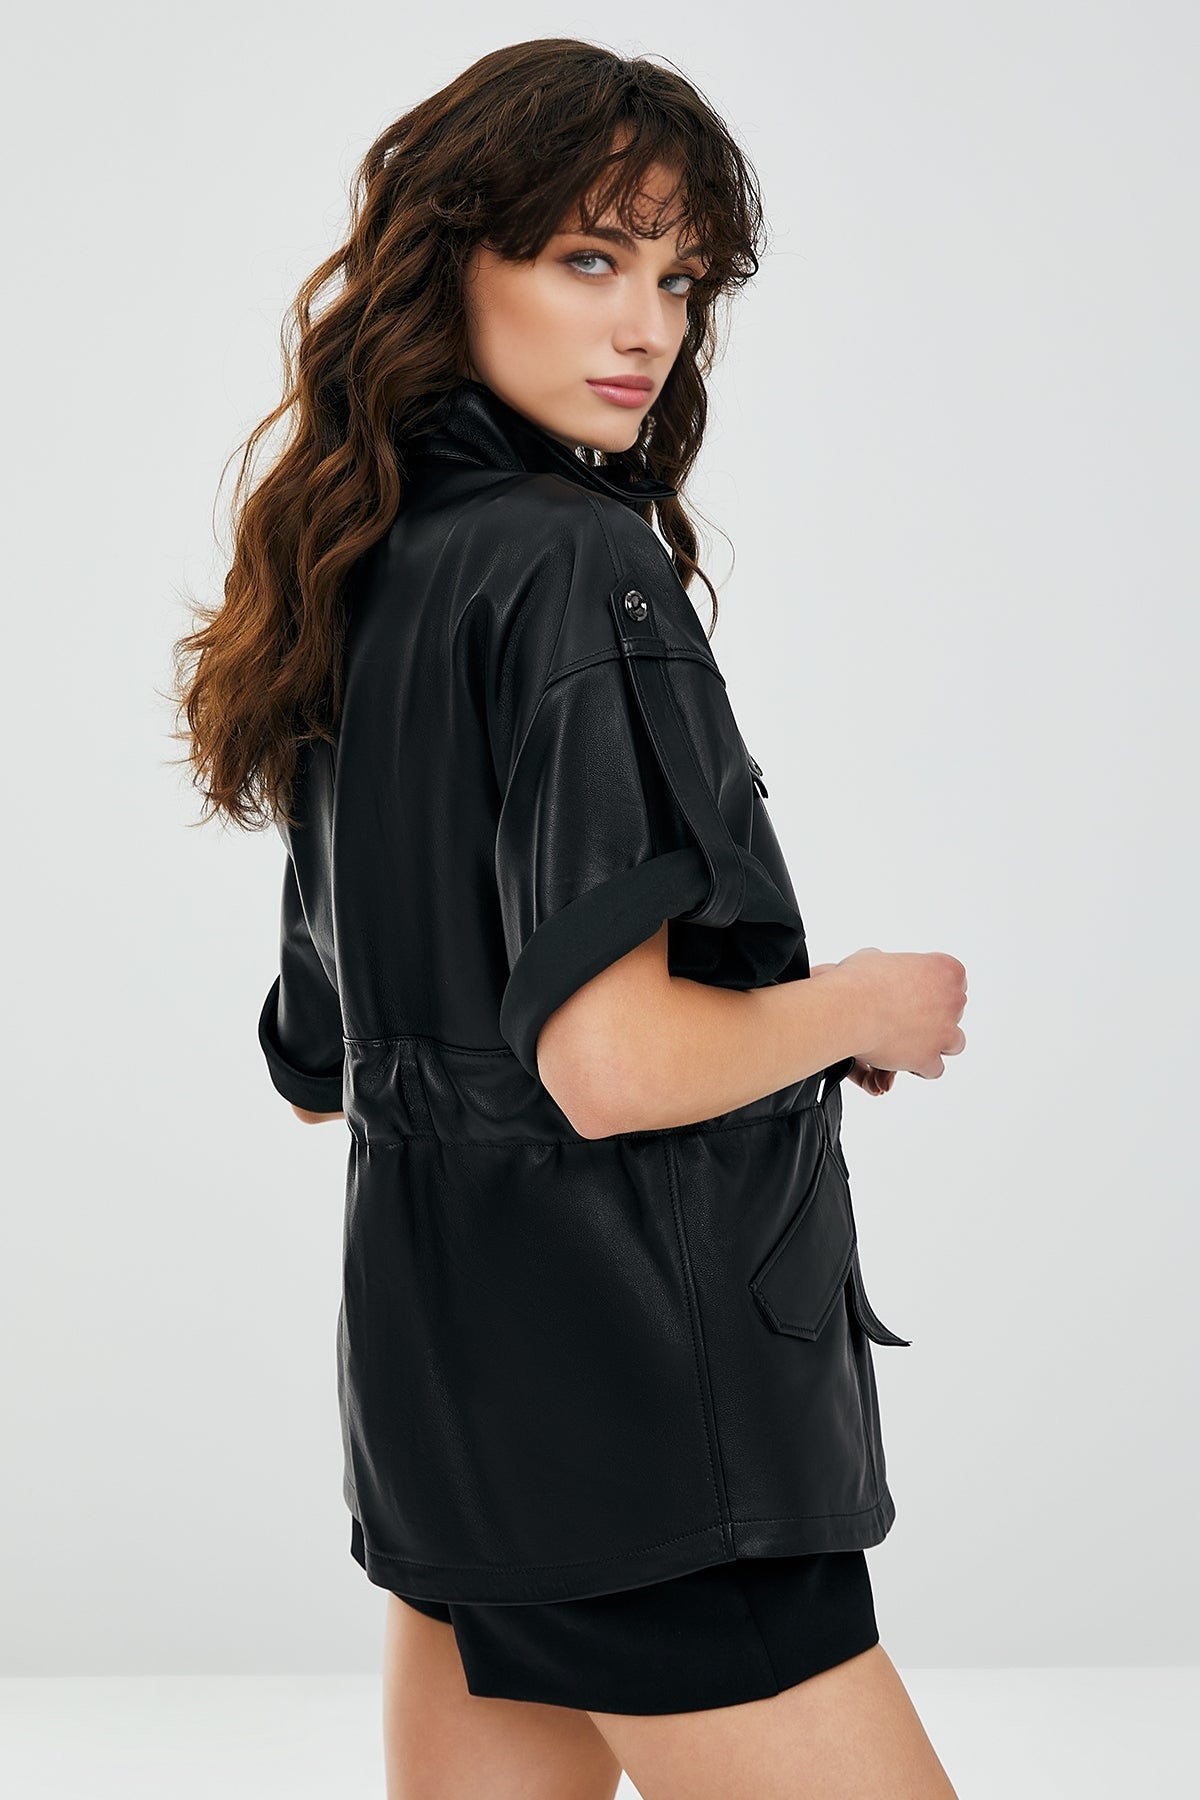 Goldy Black Women's Leather Short Sleeve Leather Jacket